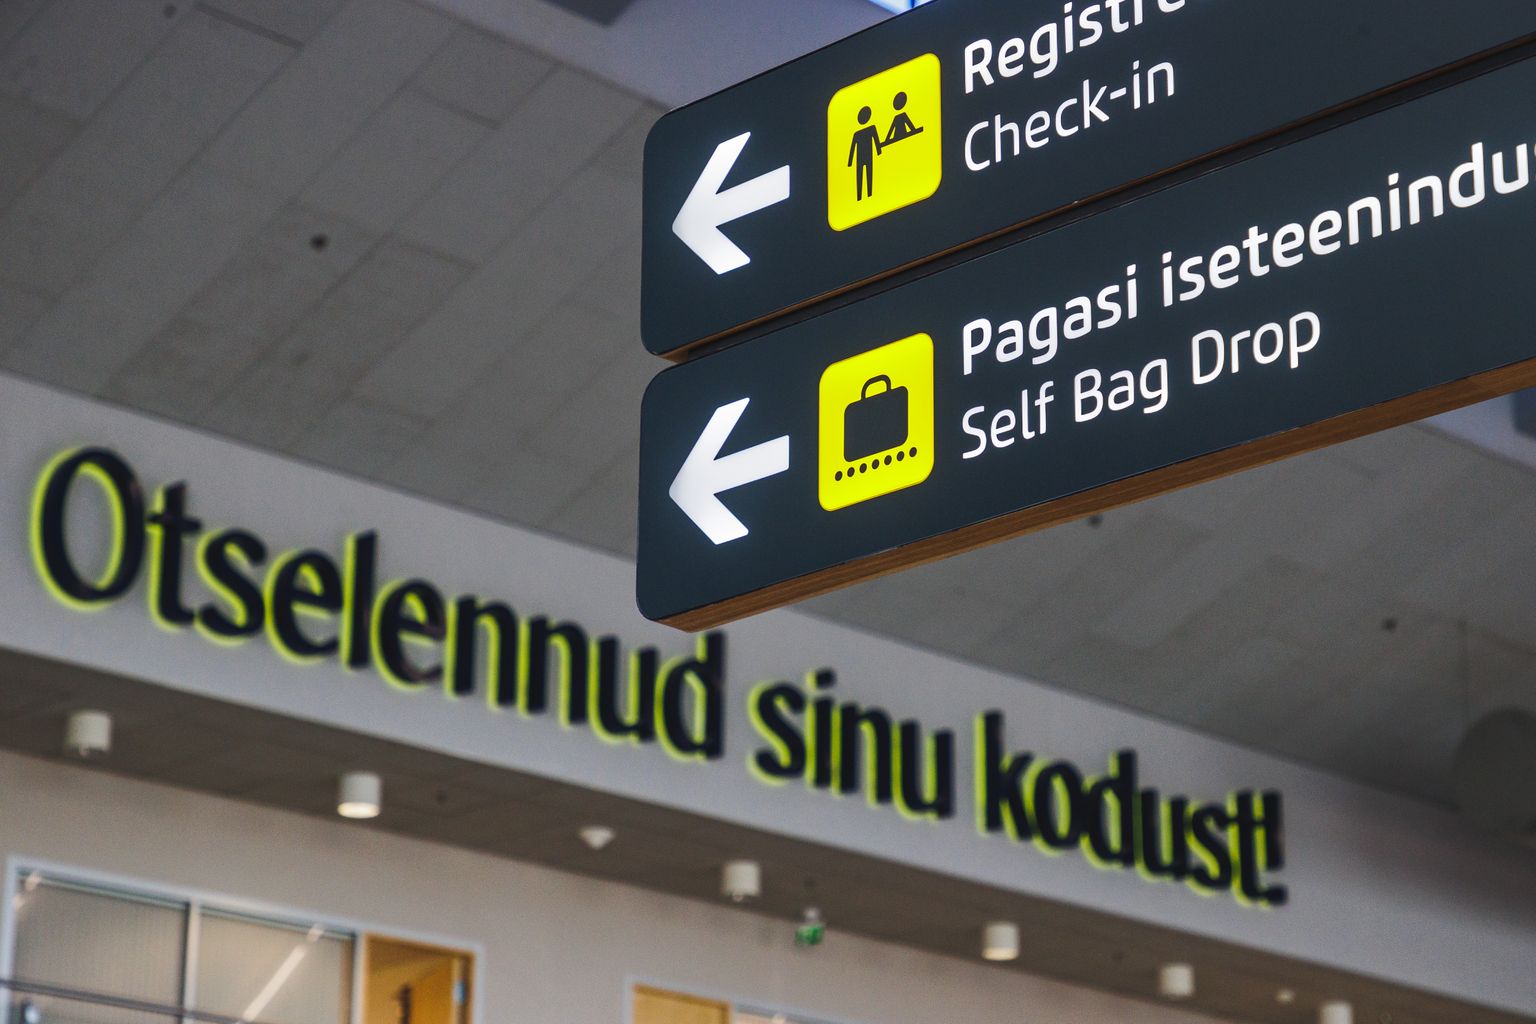 Таллиннский аэропорт.